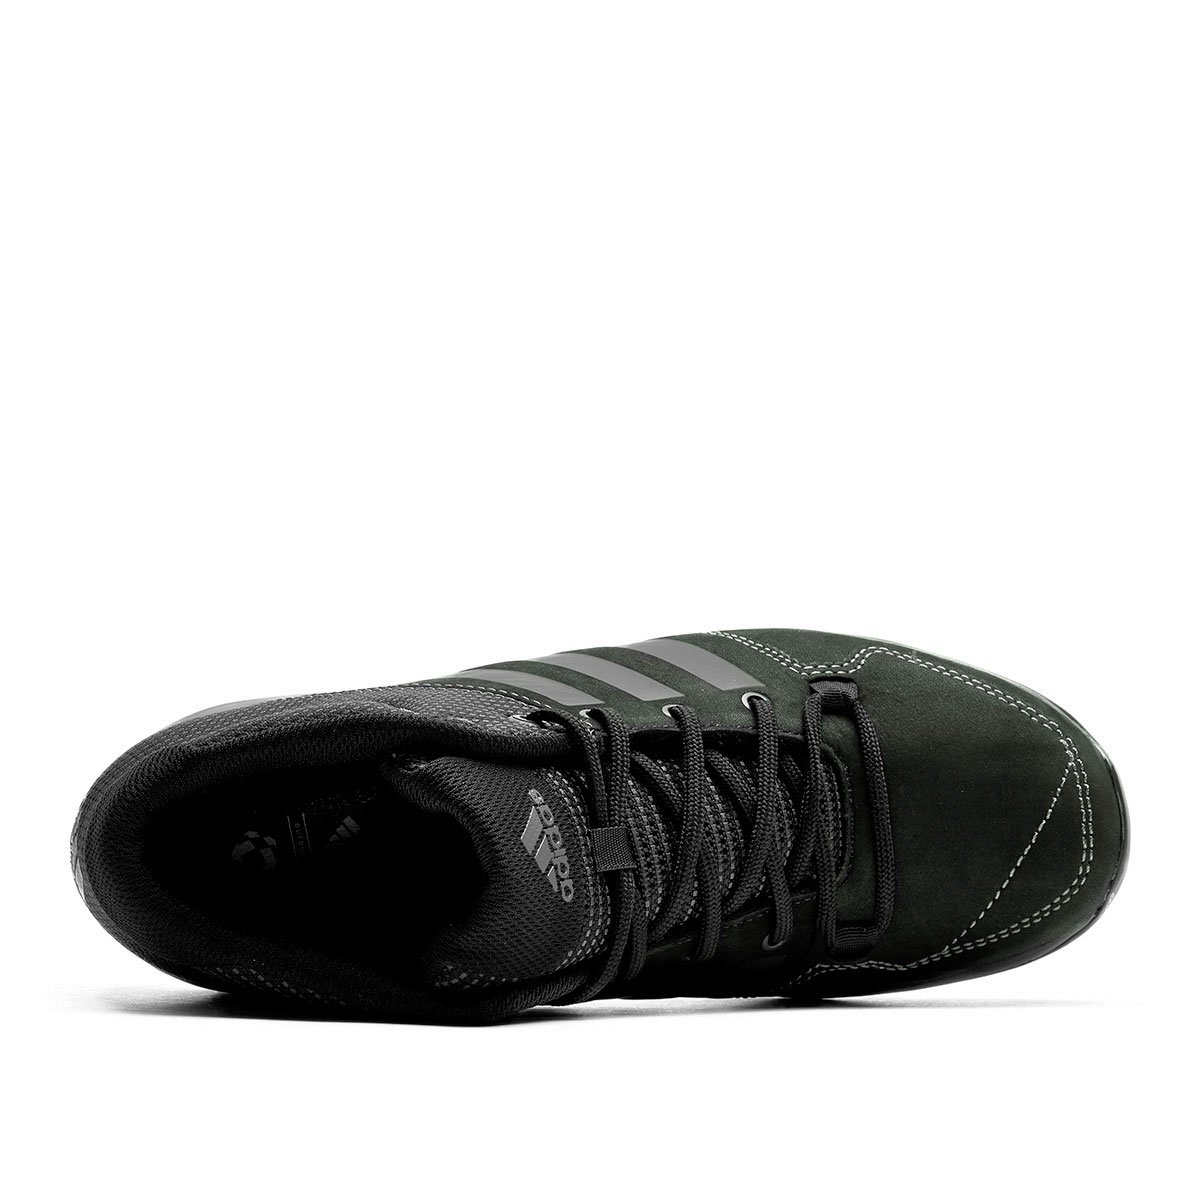 adidas Daroga Plus Mid Leather  B27276